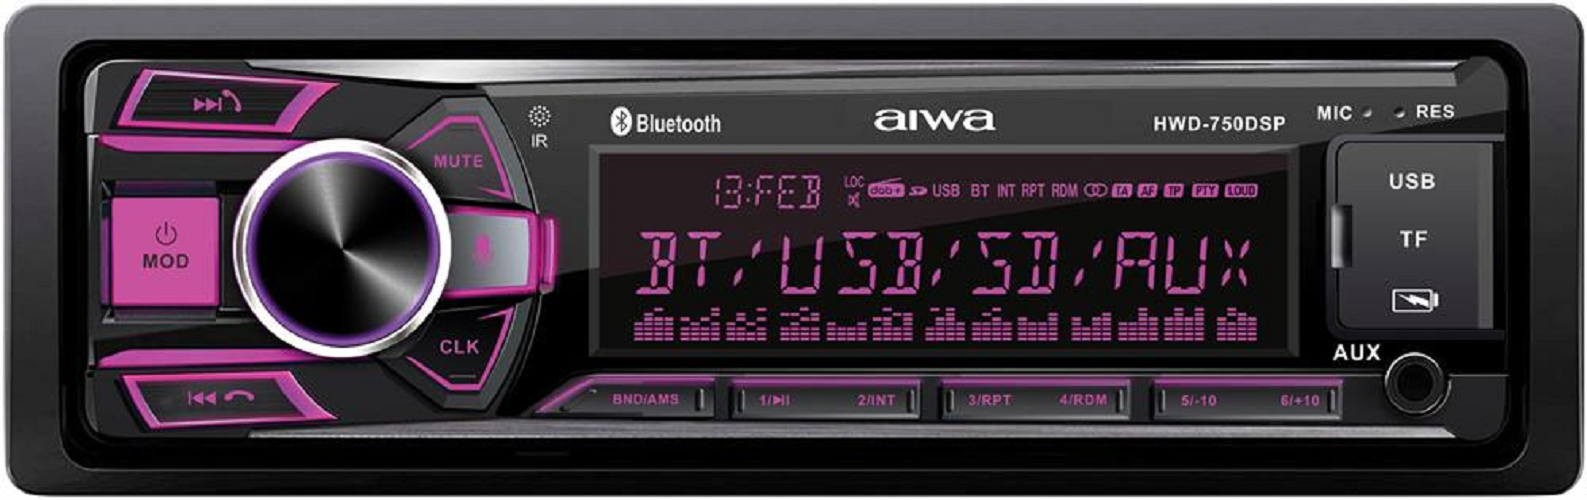 Автомобильная магнитола AIWA HWD-750 DSP с процессором